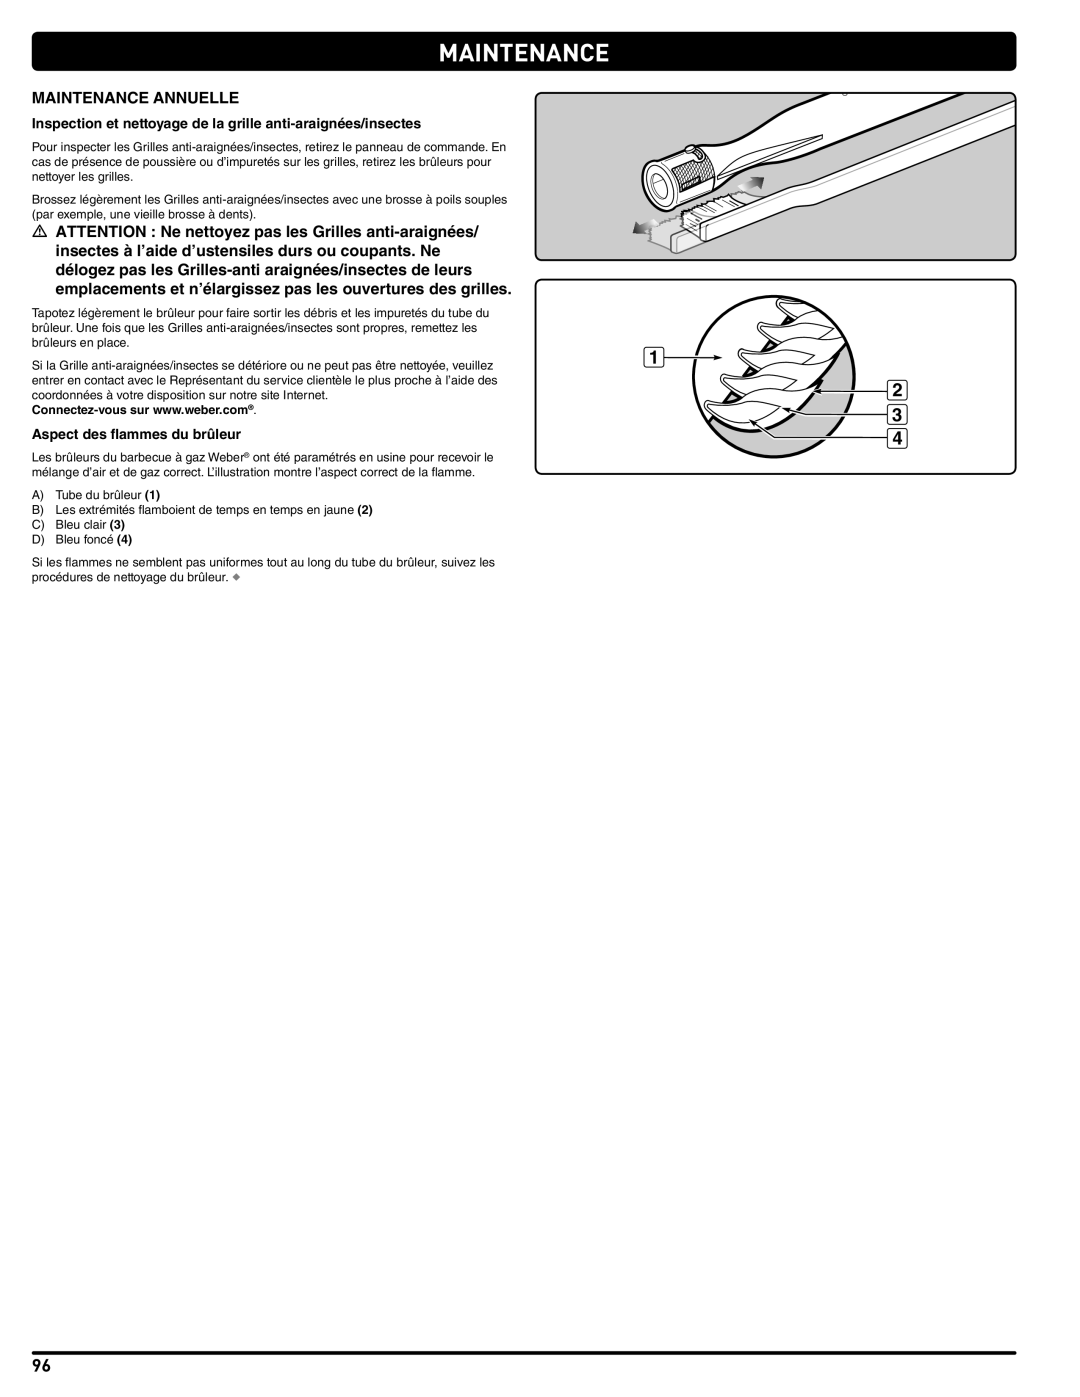 Weber 56576 manual Maintenance Annuelle, Inspection et nettoyage de la grille anti-araignées/insectes 